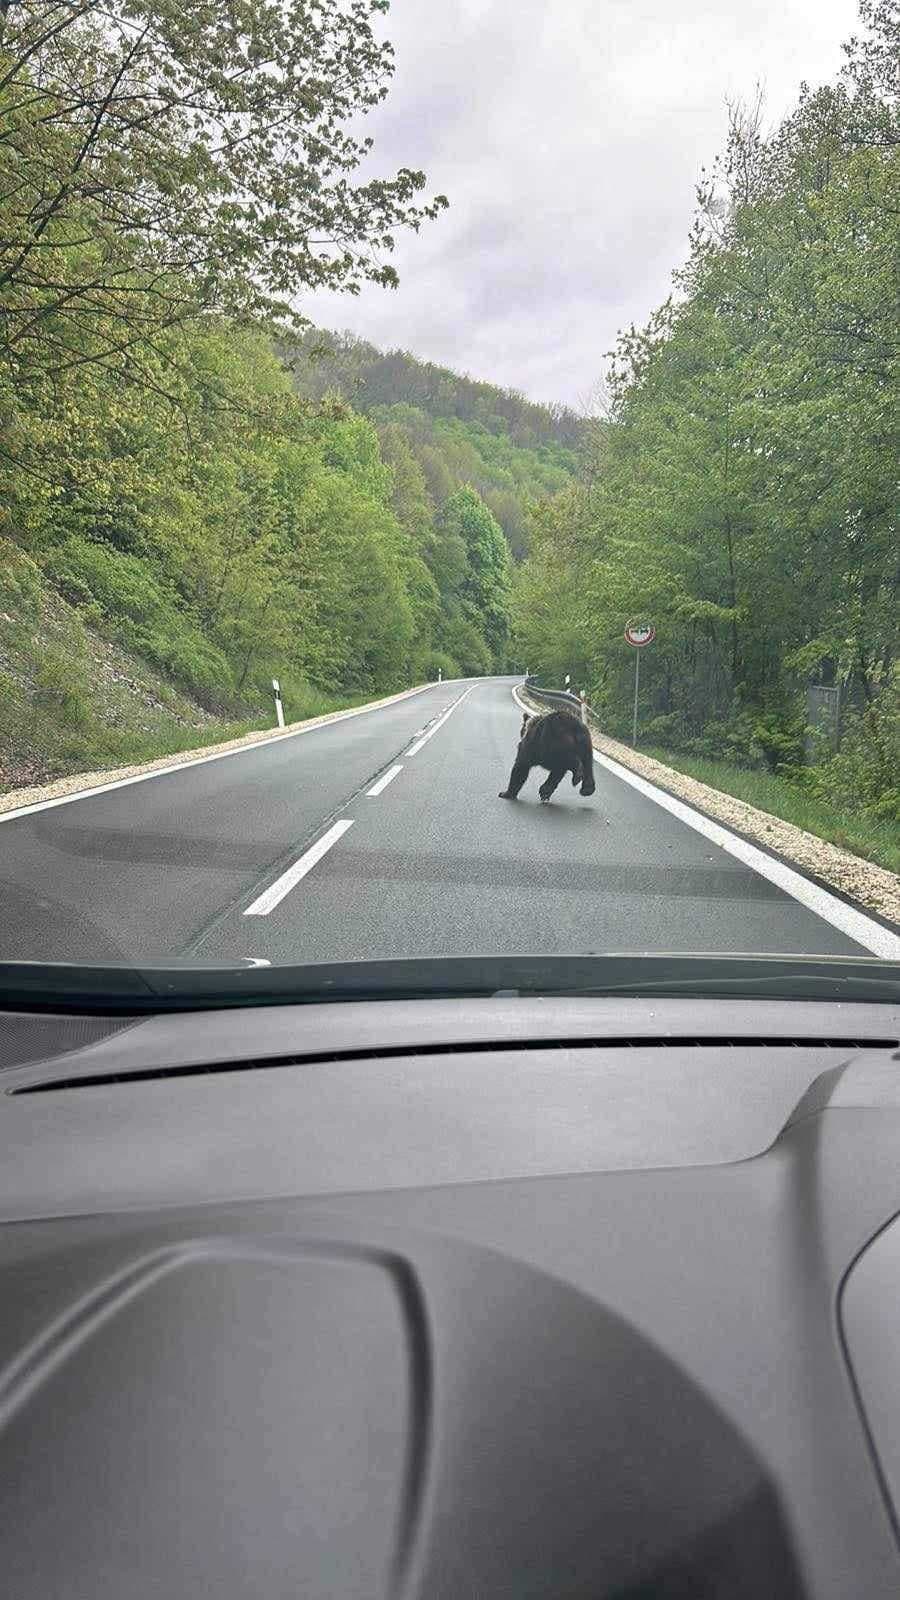 V katastri obce Košická Belá, v blízkosti chatovej lokality, bol zaznamenaný pohyb medveďa.